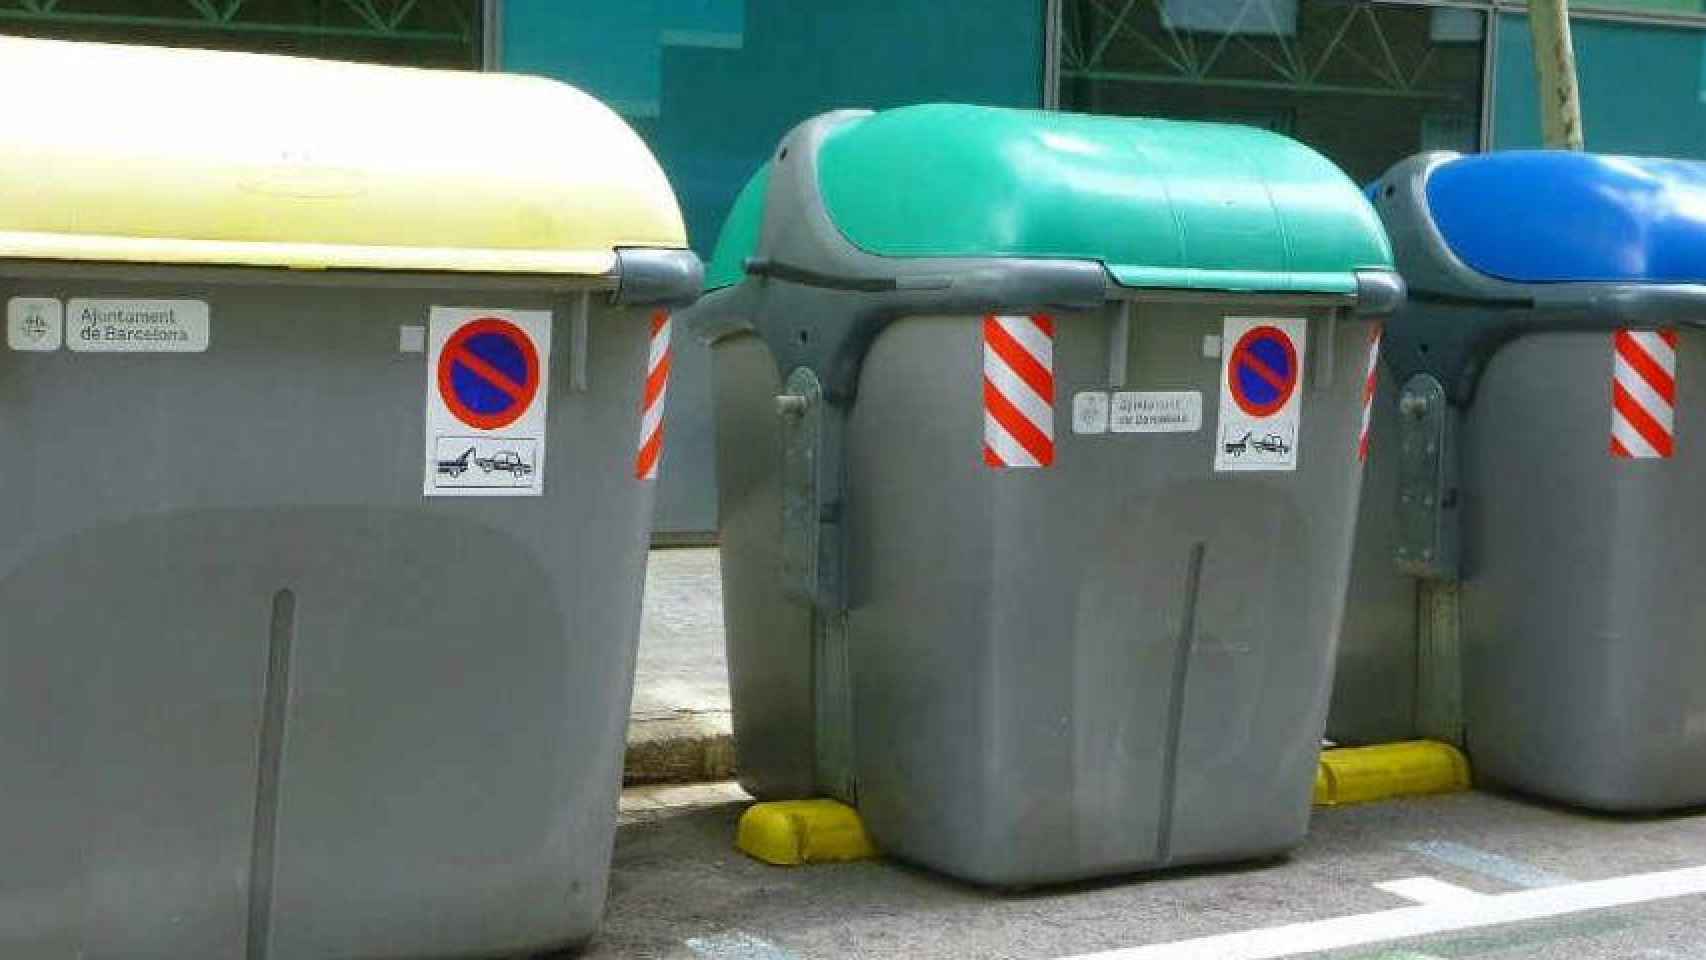 El ayuntamiento de Barcelona crea un nuevo impuesto de recogida de residuos / EFE